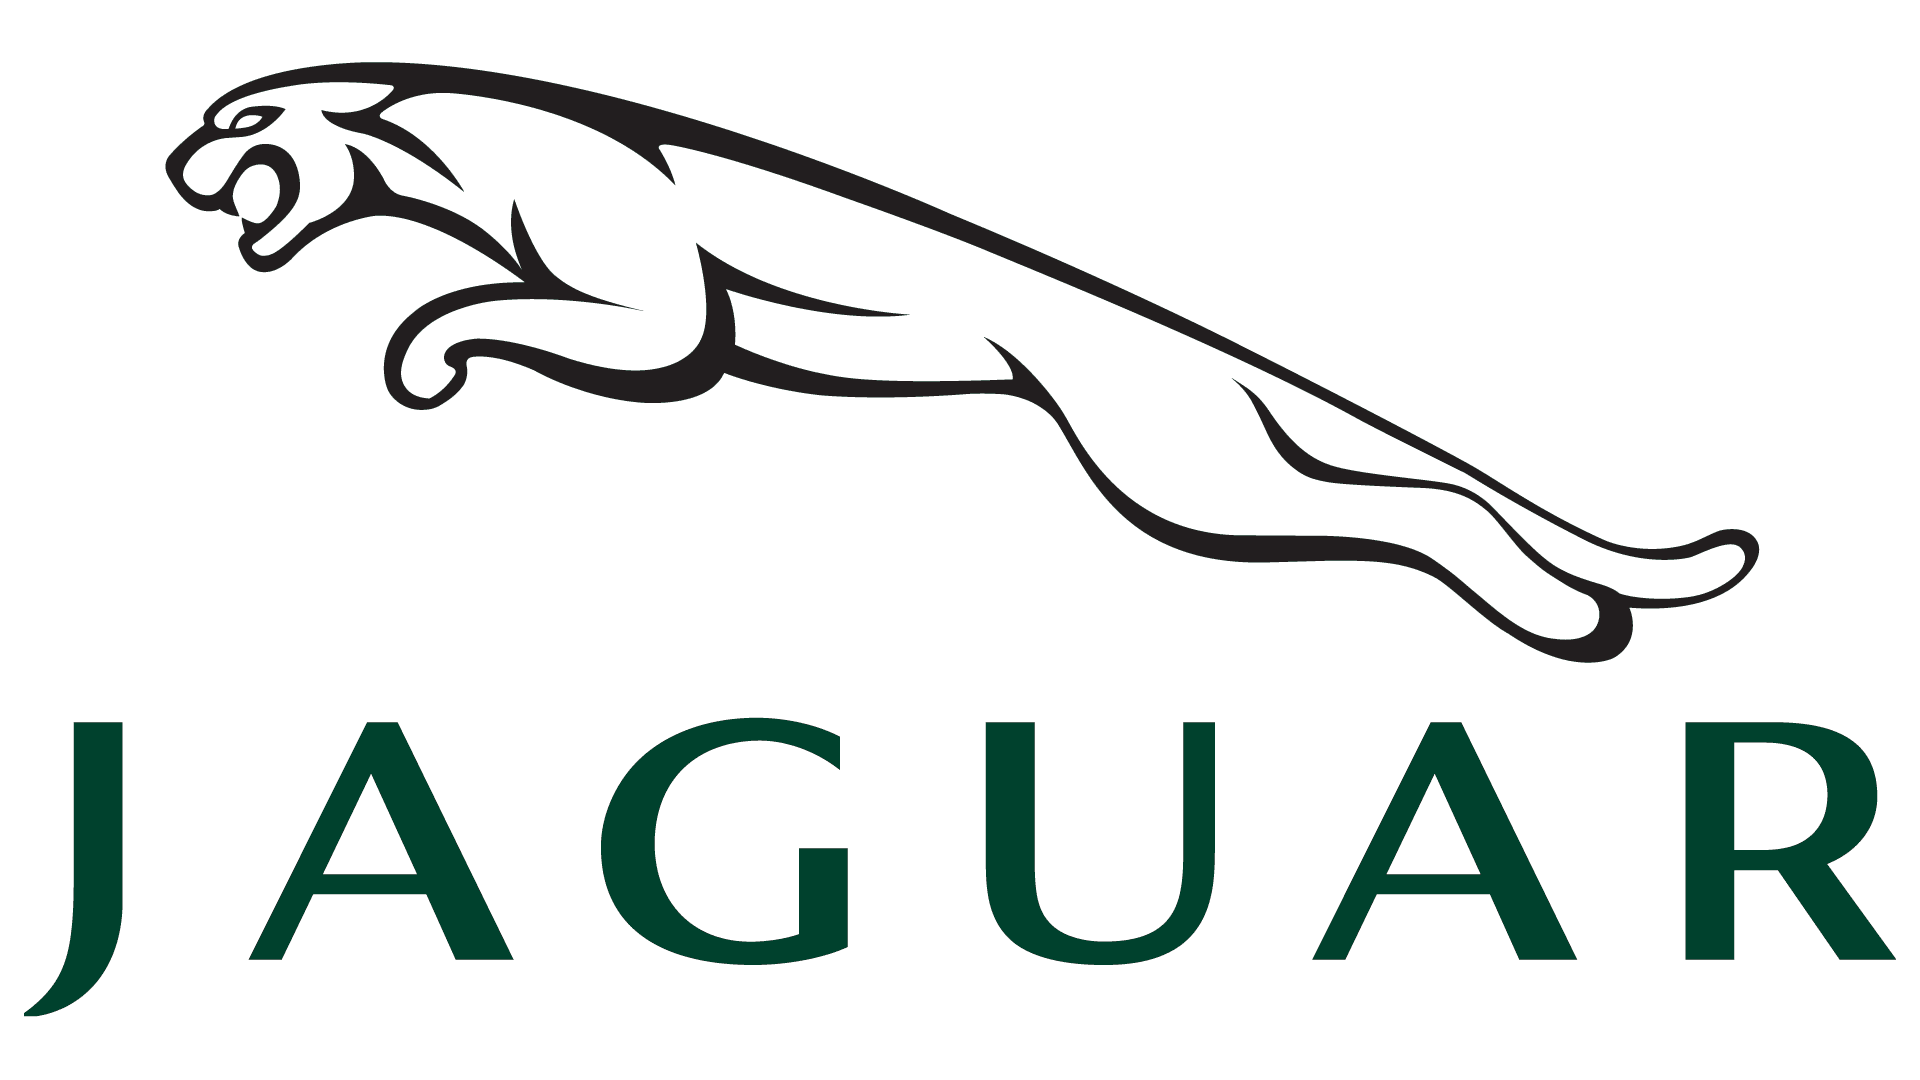 Jaguar-symbol-green-1920x1080